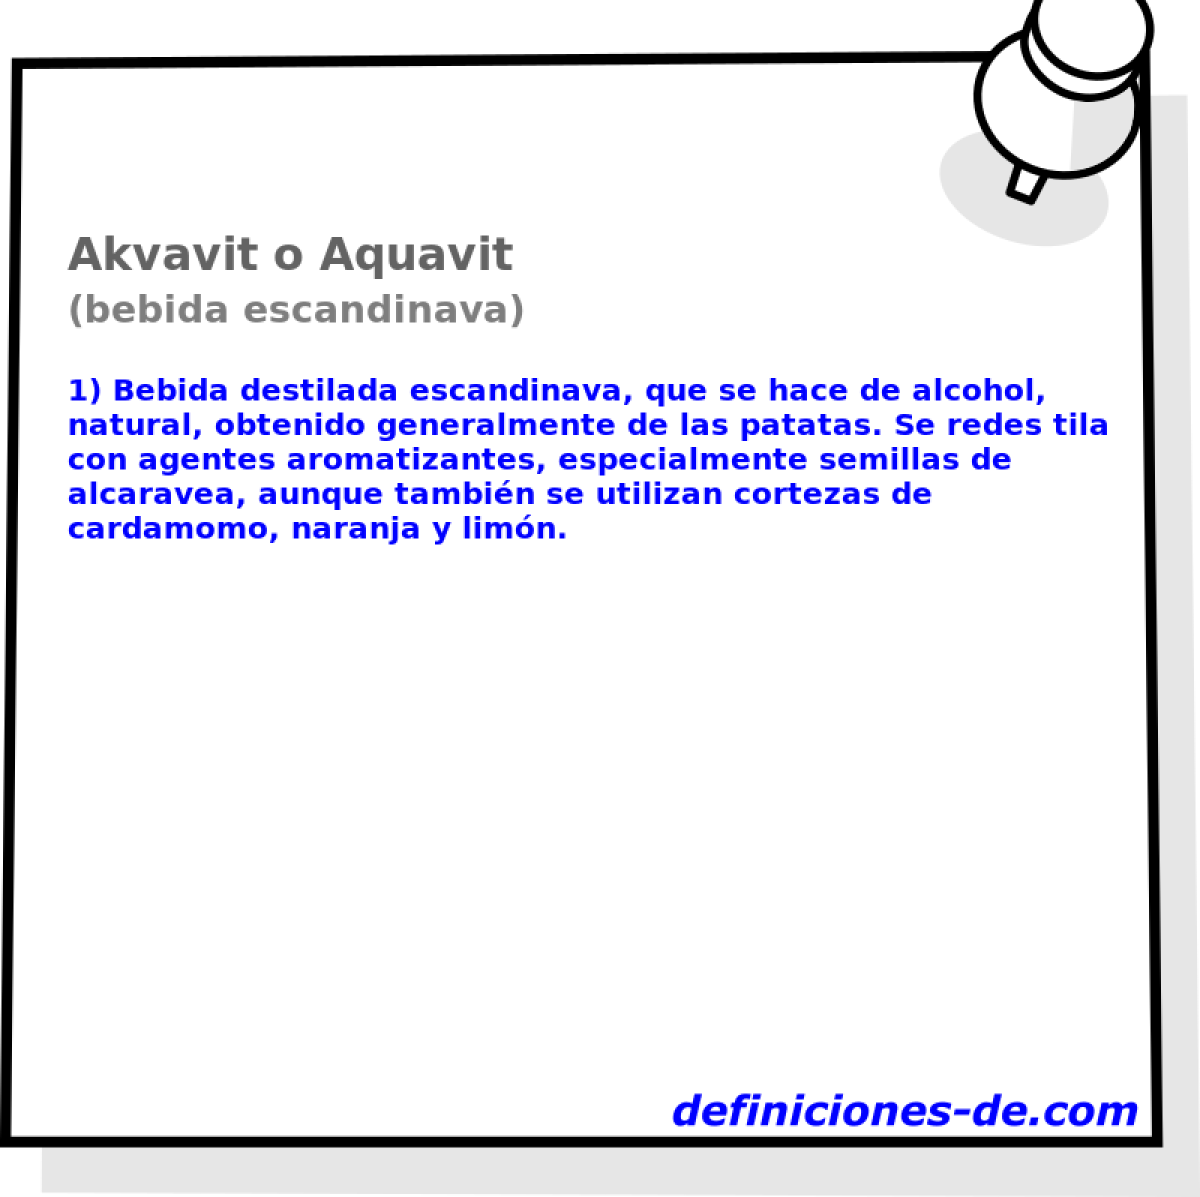 Akvavit o Aquavit (bebida escandinava)